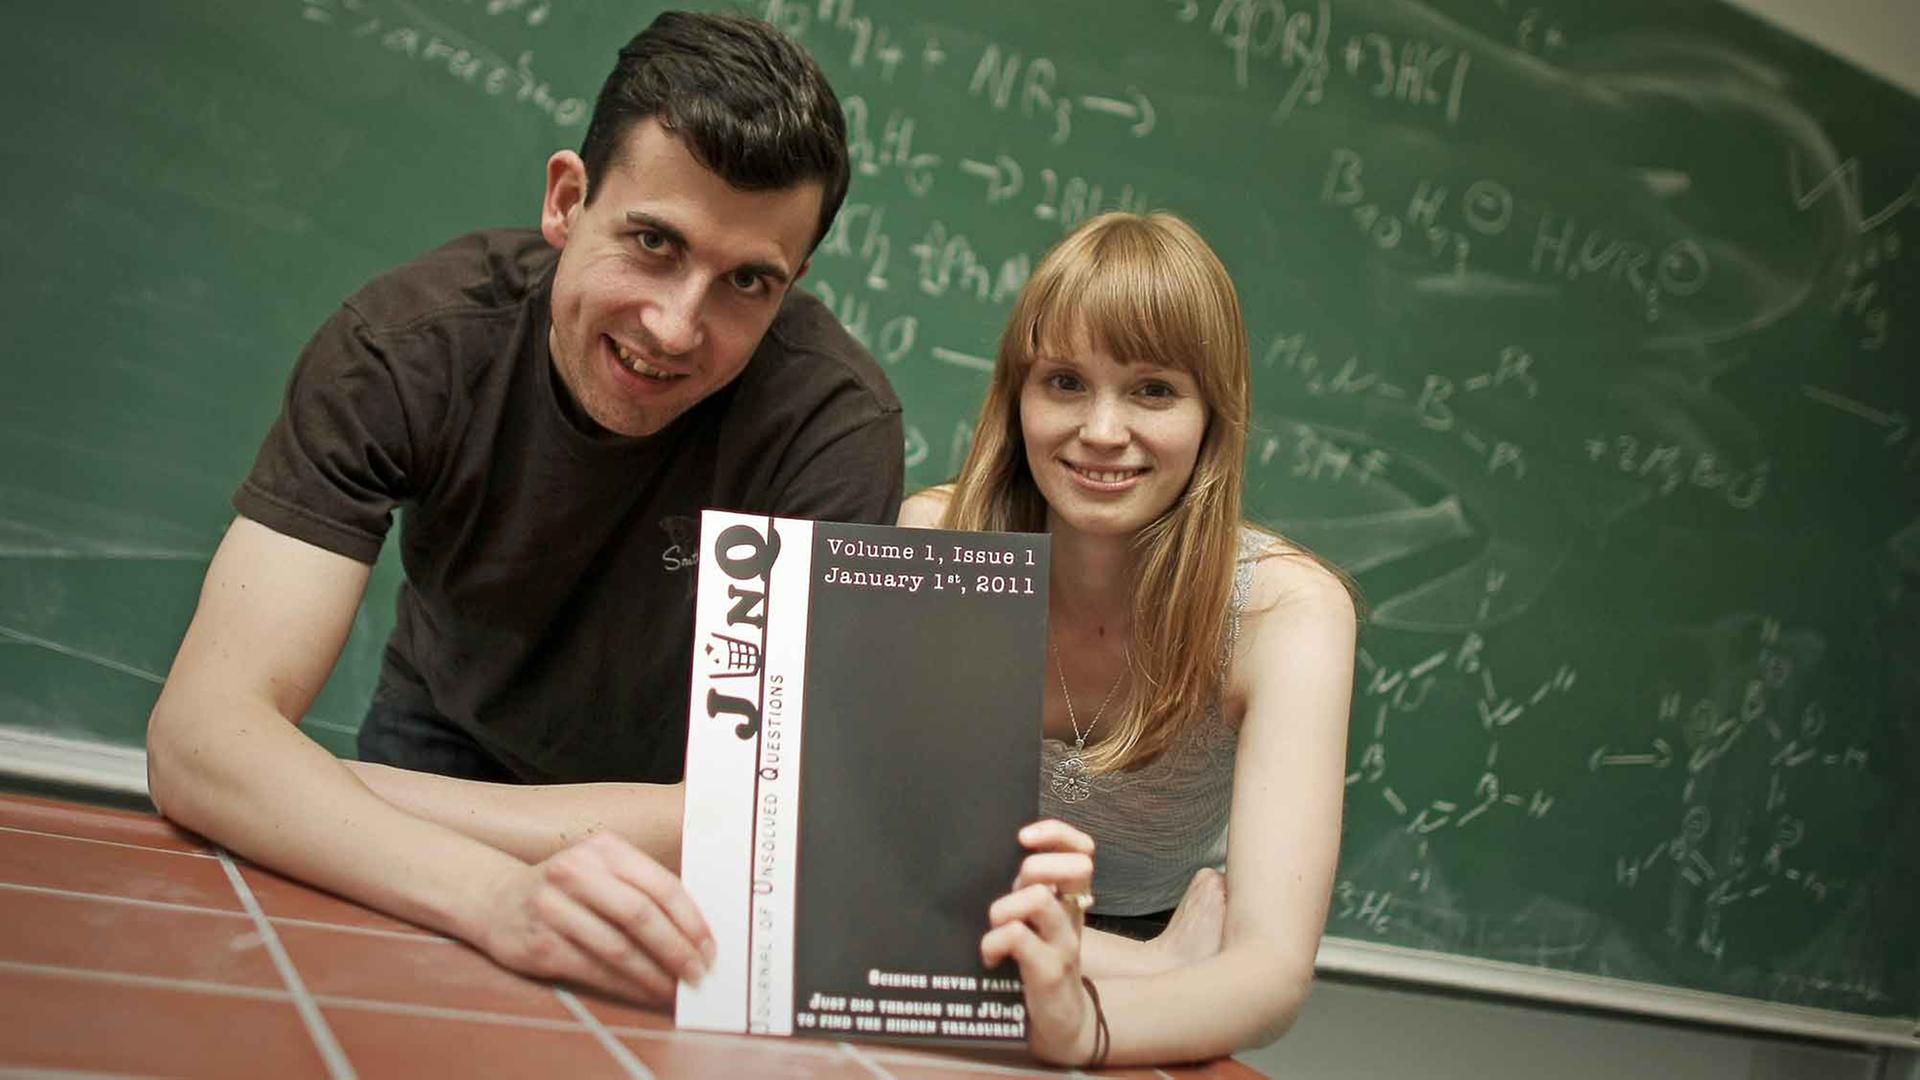 Die Studenten Leonie Mück und Thomas Jagau, aufgenommen am Donnerstag (07.07.2011) auf dem Gelände der Johannes Gutenberg-Universität in Mainz mit einer Ausgabe ihrer Zeitschrift "JUnQ".